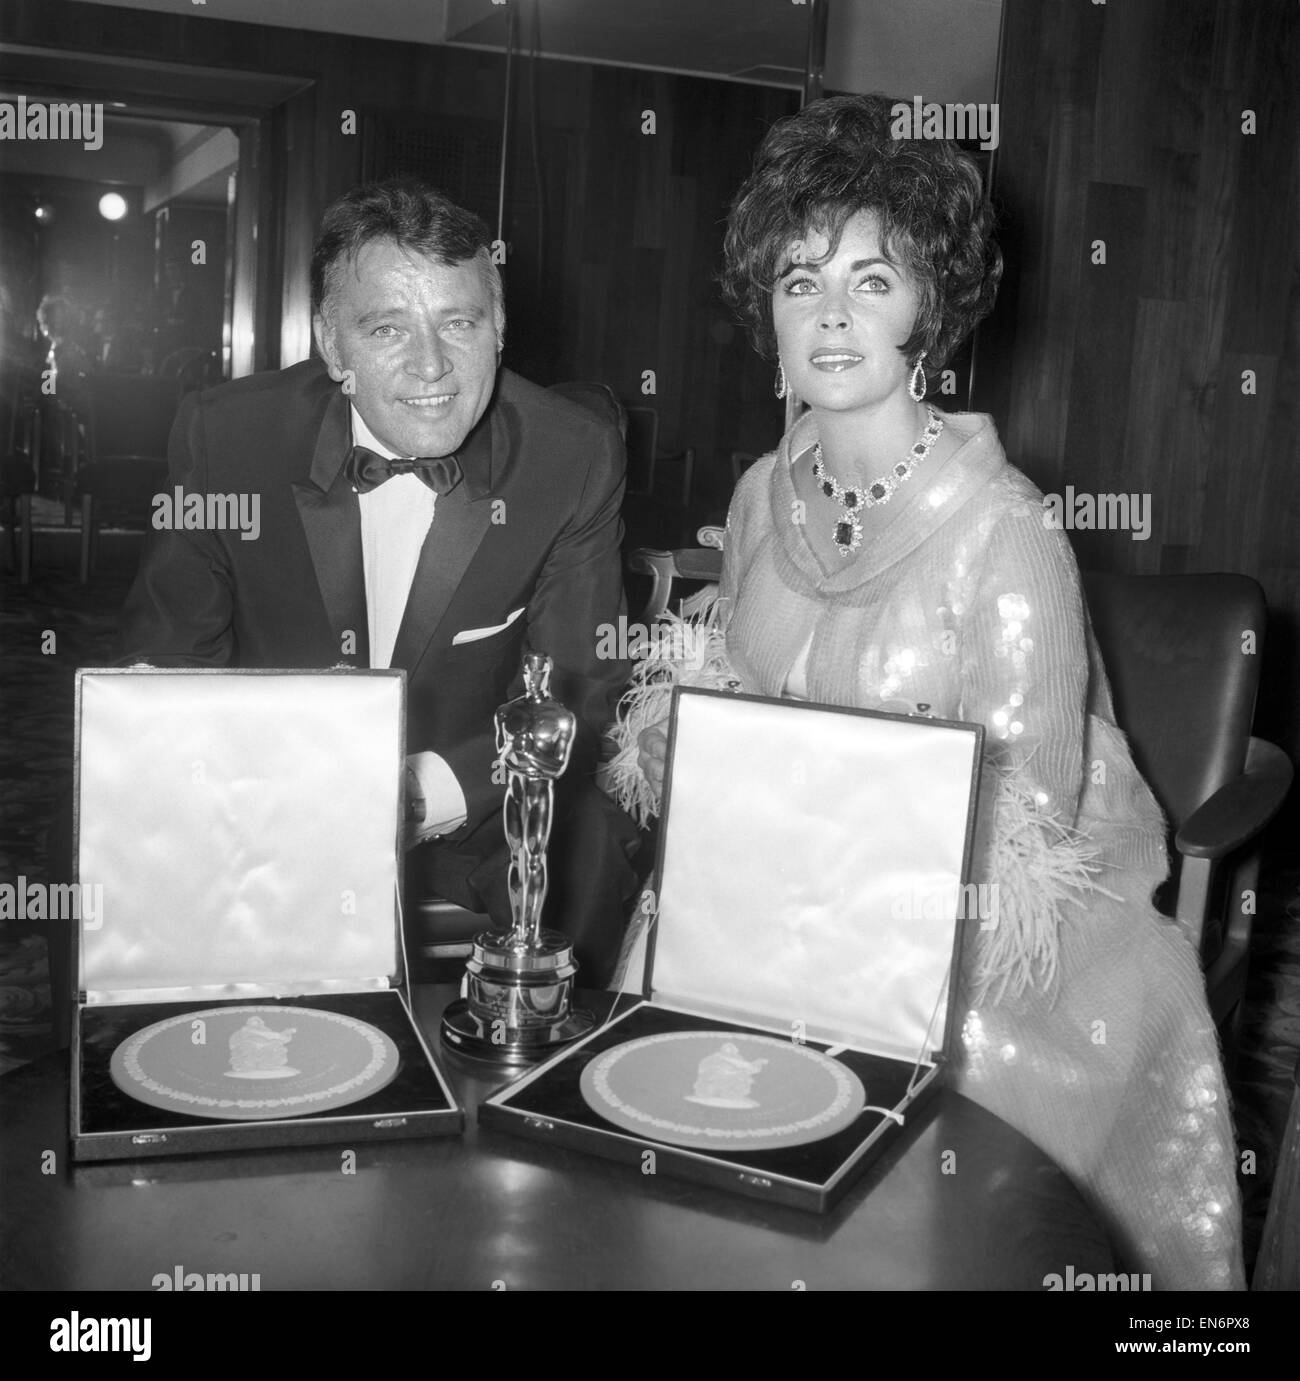 Richard Burton et Elizabeth Taylor vu ici à film awards où Mme Taylor a reçu son oscar de Lord Mountbatten. Liz Taylor et Richard Burton avec leurs prix, pour la meilleure actrice et meilleur acteur. Également dans l'image est l'oscar qui a été présenté Banque D'Images